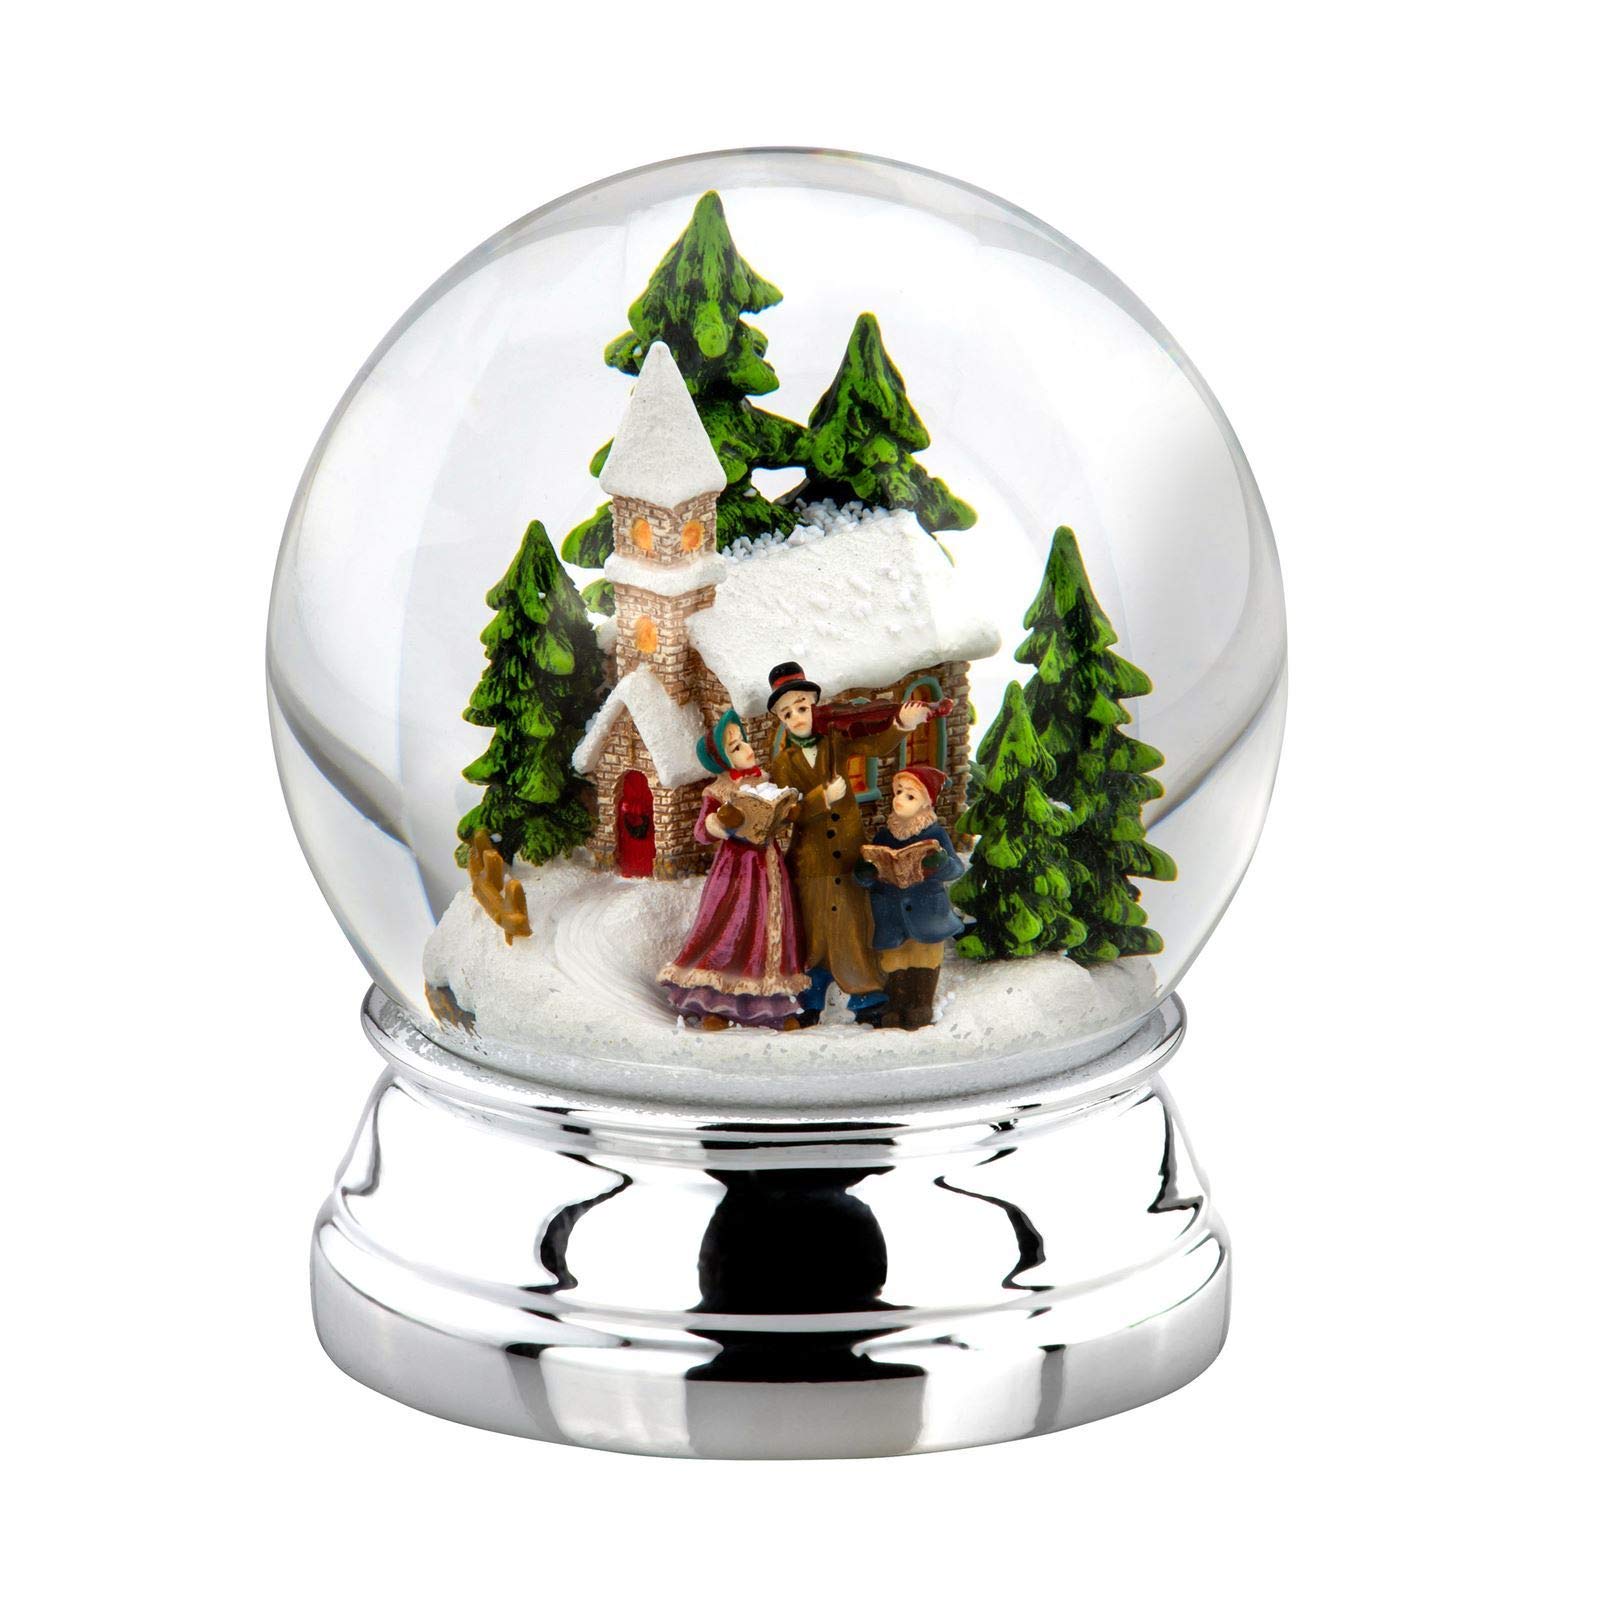 Große versilberte Glas Schnee-Kugel mit bunter Winterlandschaft &Familie Ø 10 cm - Chrismas Deko Schüttelkugel für Winter & Weihnachten